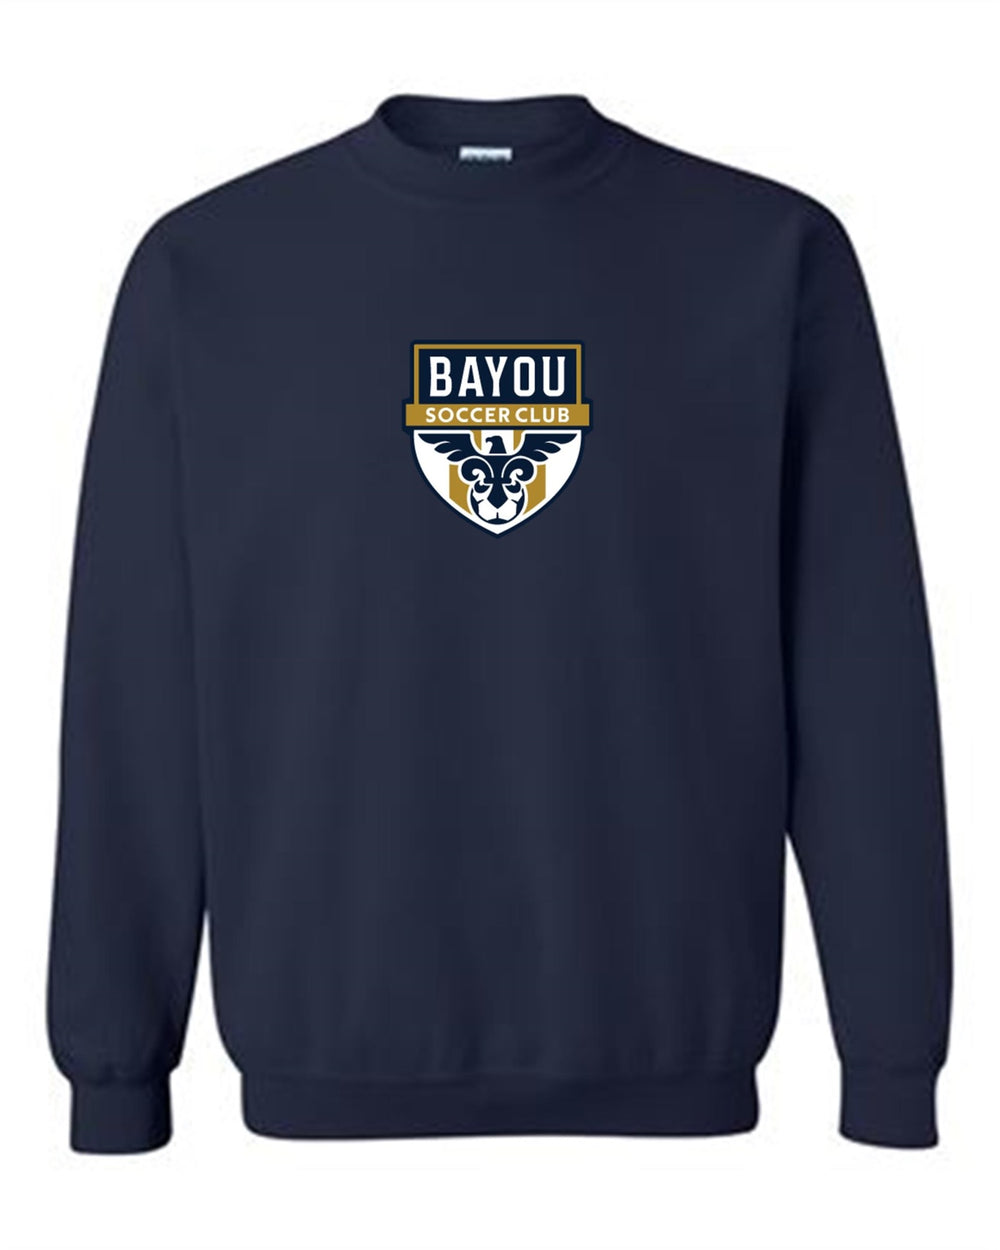 Bayou Soccer Club Crew Neck Sweatshirt Bayou Soccer Club Spiritwear Navy Youth Small - Third Coast Soccer